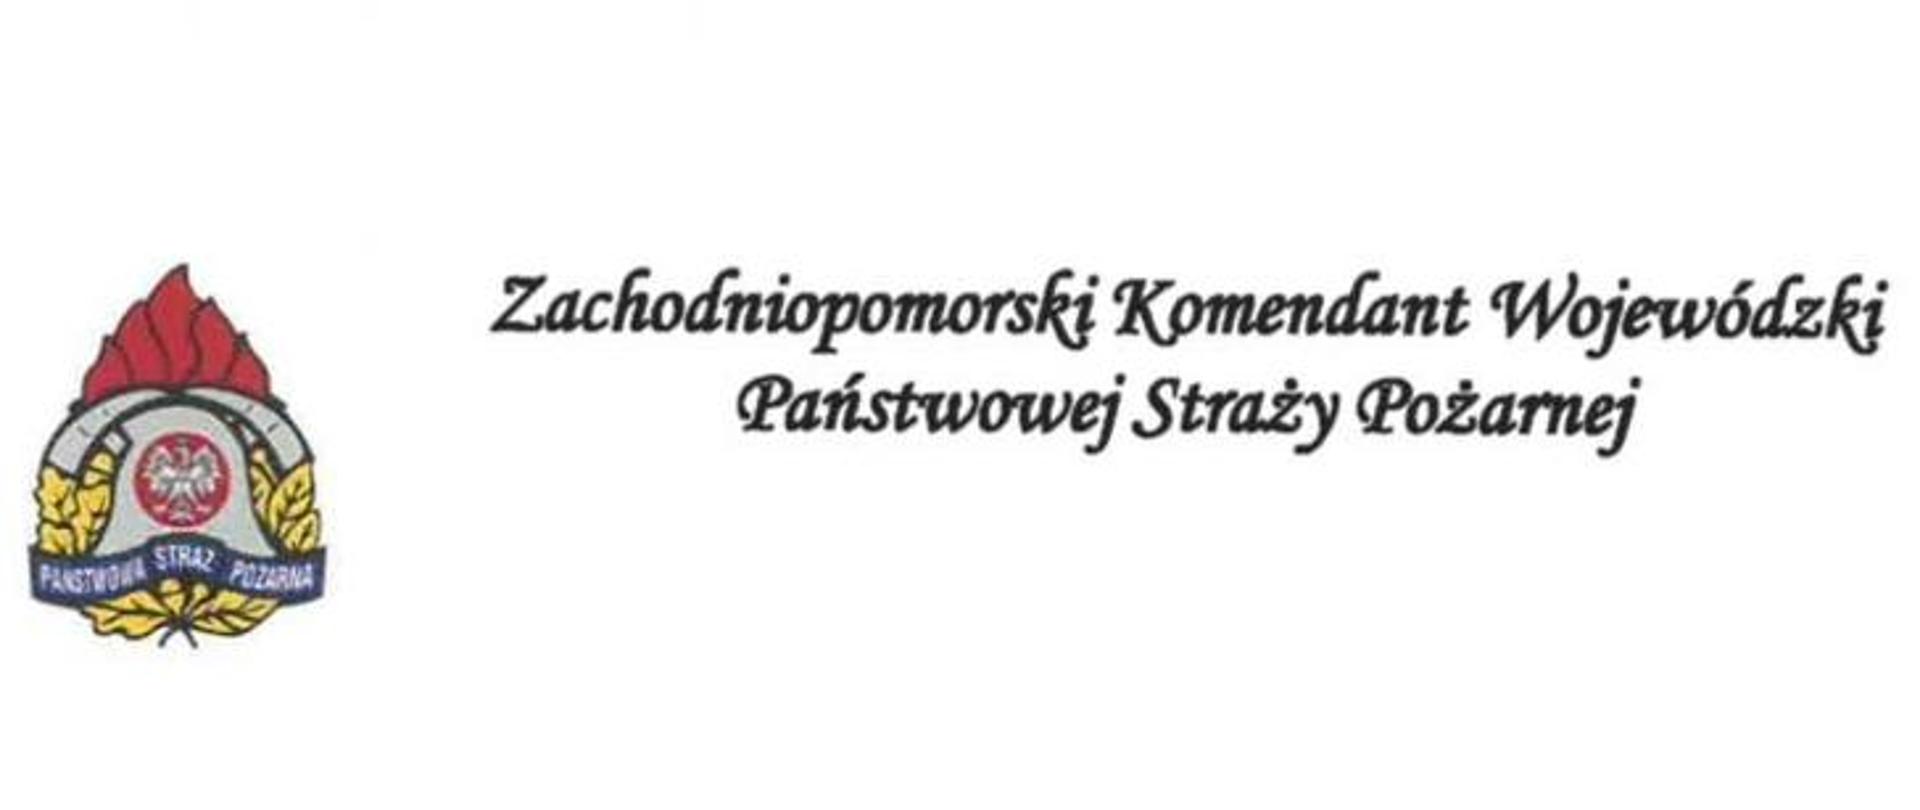 Zdjęcie przedstawia logo PSP wraz z napisem "Zachodniopomorski Komendant Wojewódzki Państwowej Straży Pożarnej